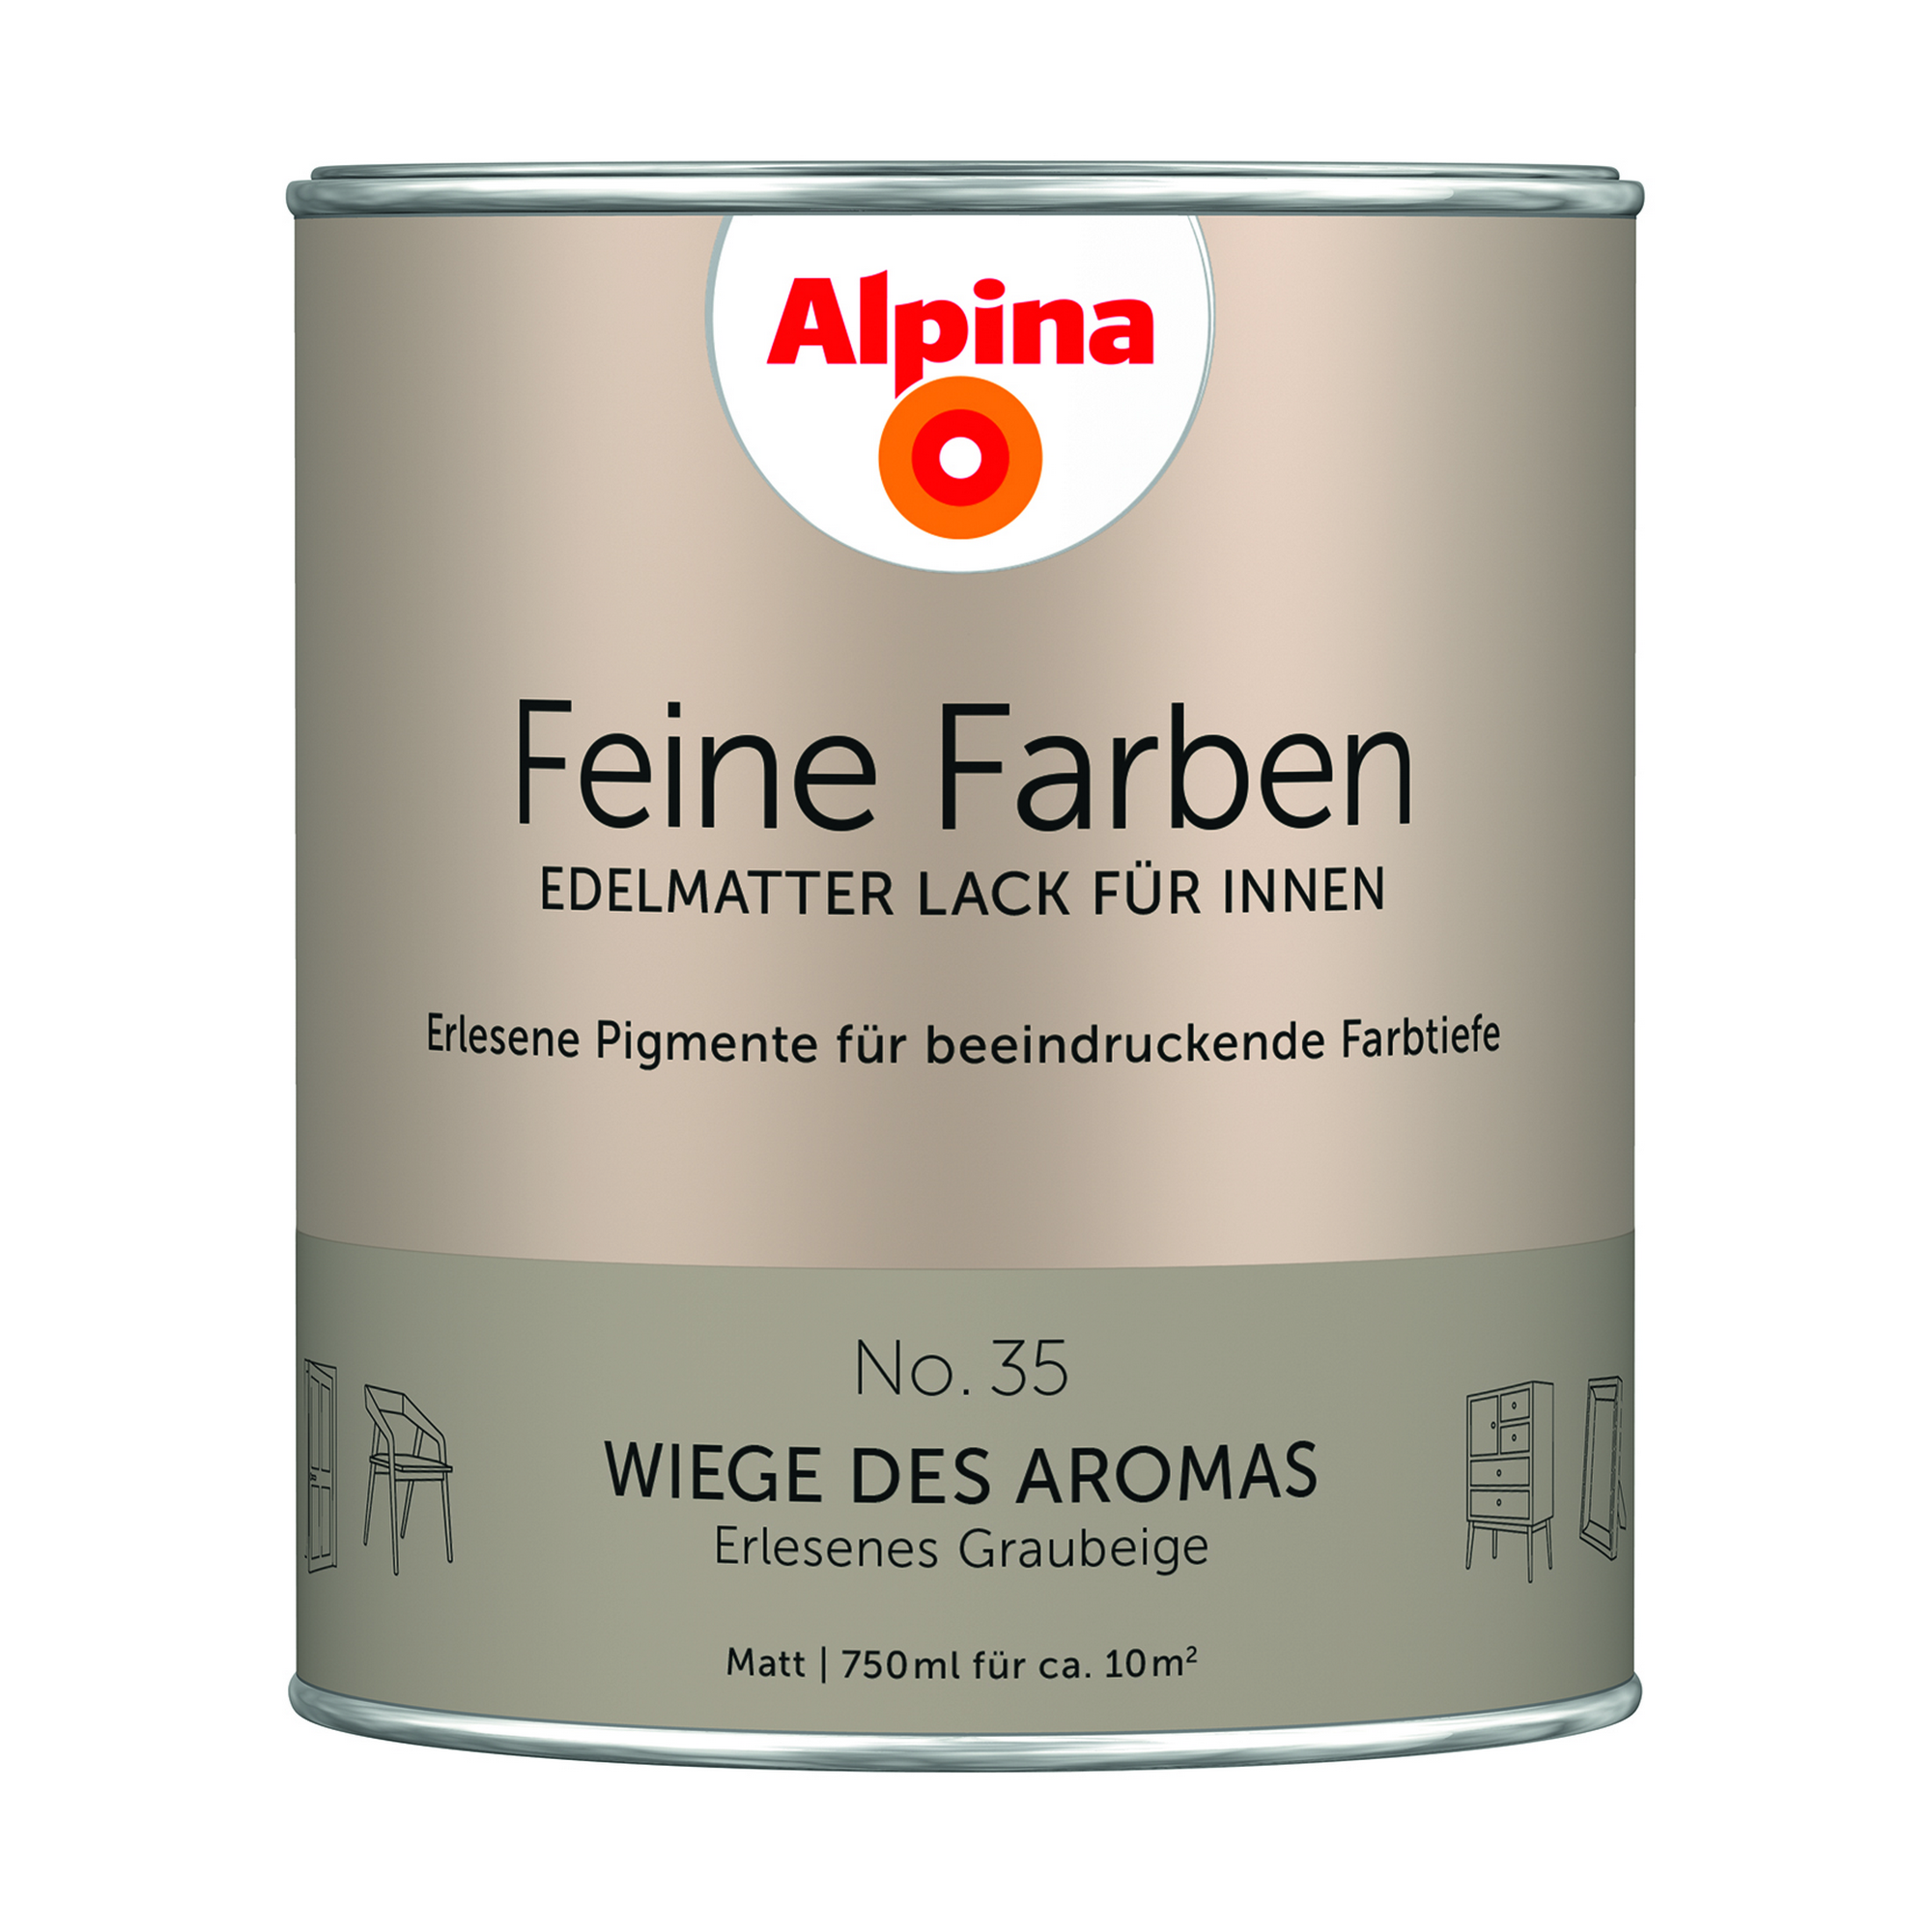 Feine Farben 'Wiege des Aromas' graubeige matt 750 ml + product picture